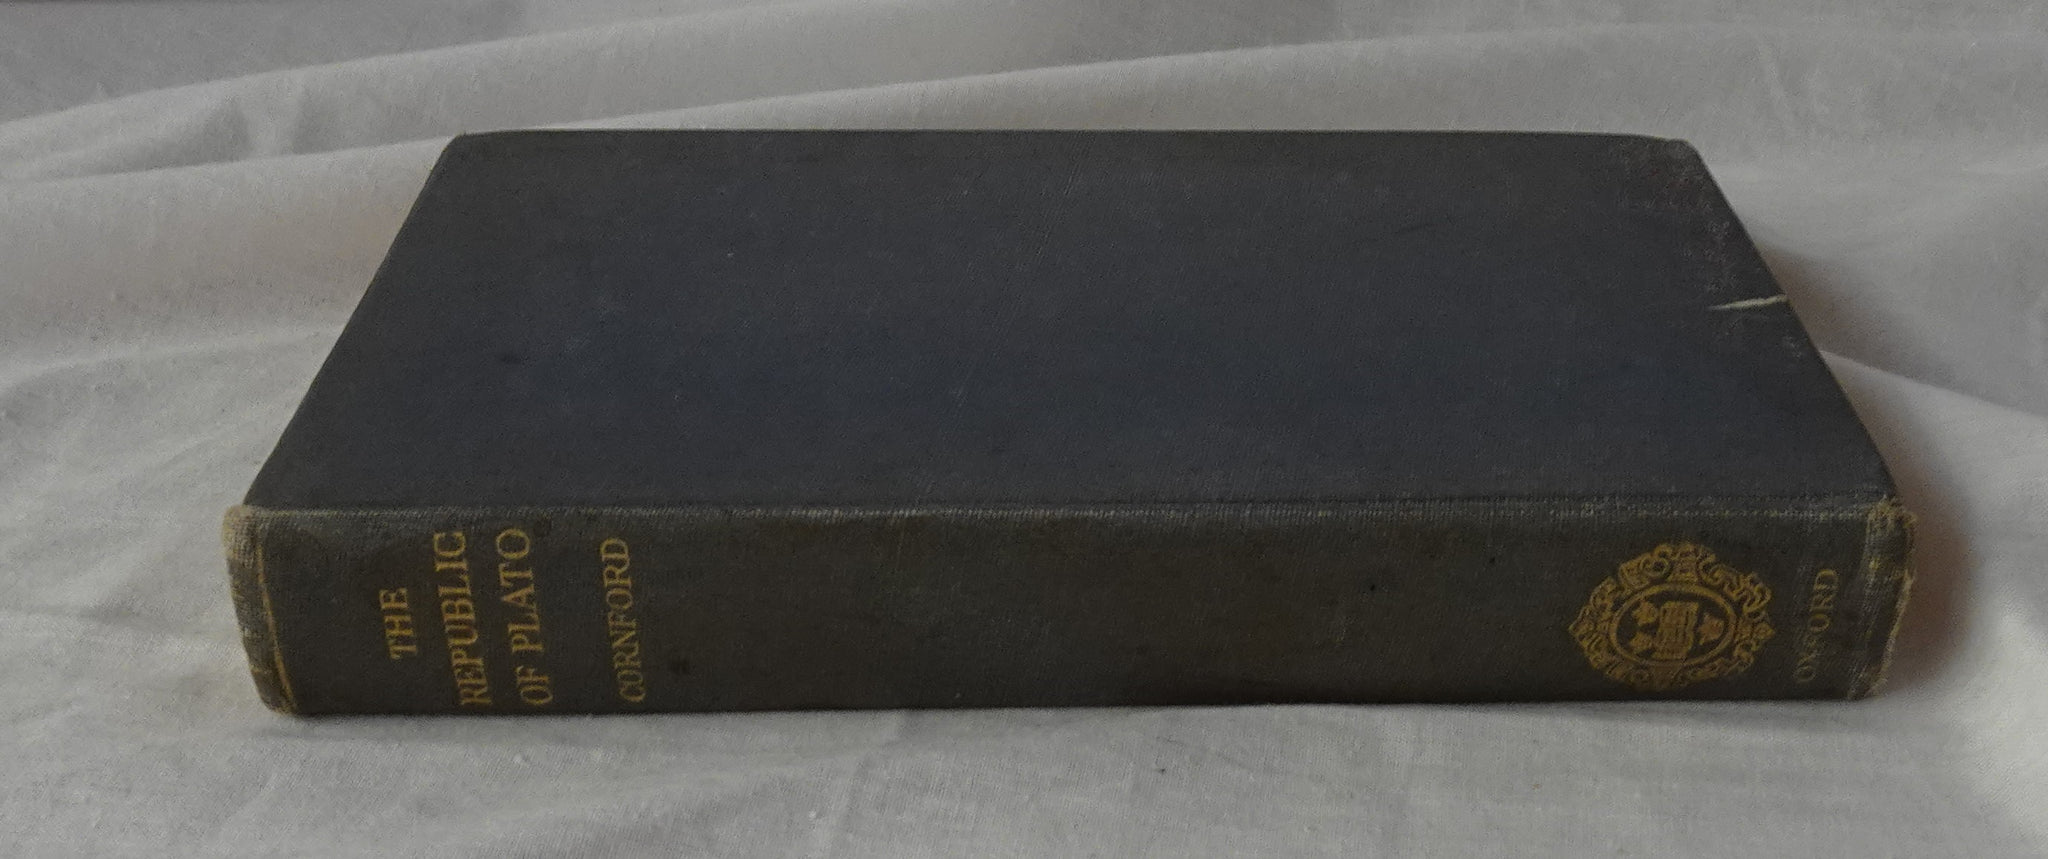 The Republic of Plato by Francis Macdonald Cornford – Morgan's Rare Books